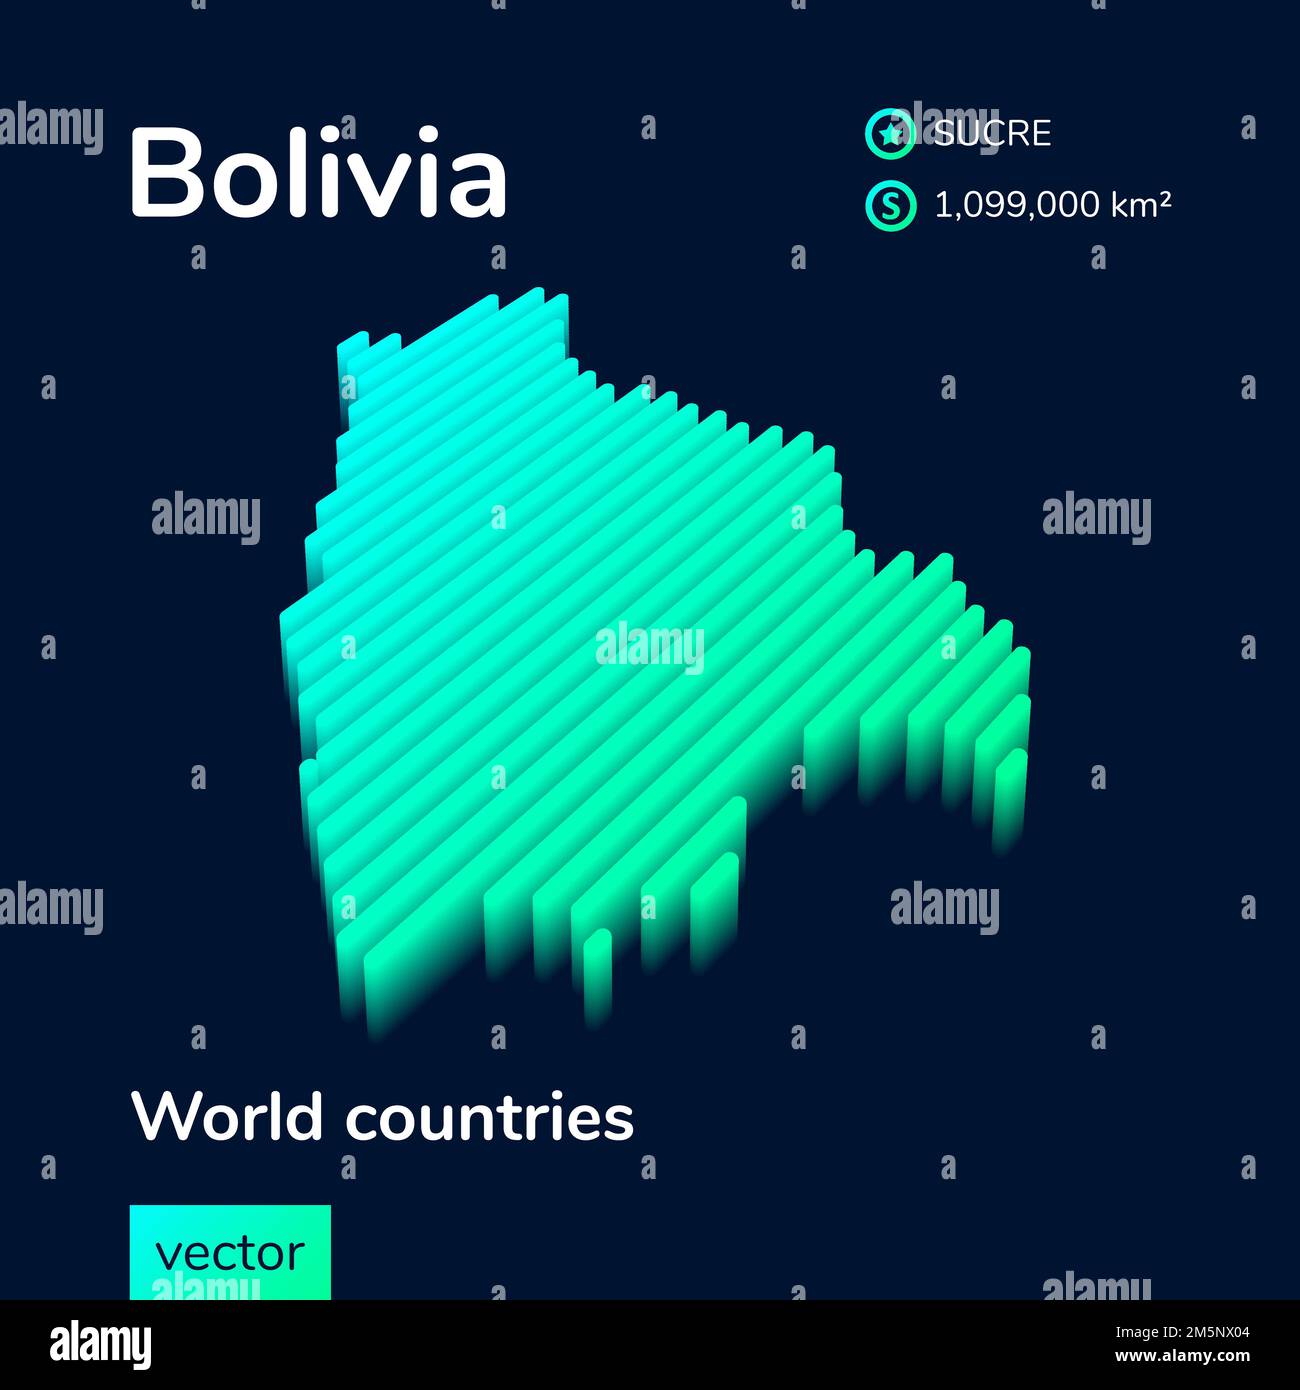 Bolivie 3D carte. Carte vectorielle isométrique au néon numérique stylisé à rayures la carte de la Bolivie est en vert et en couleur menthe sur fond bleu foncé Illustration de Vecteur